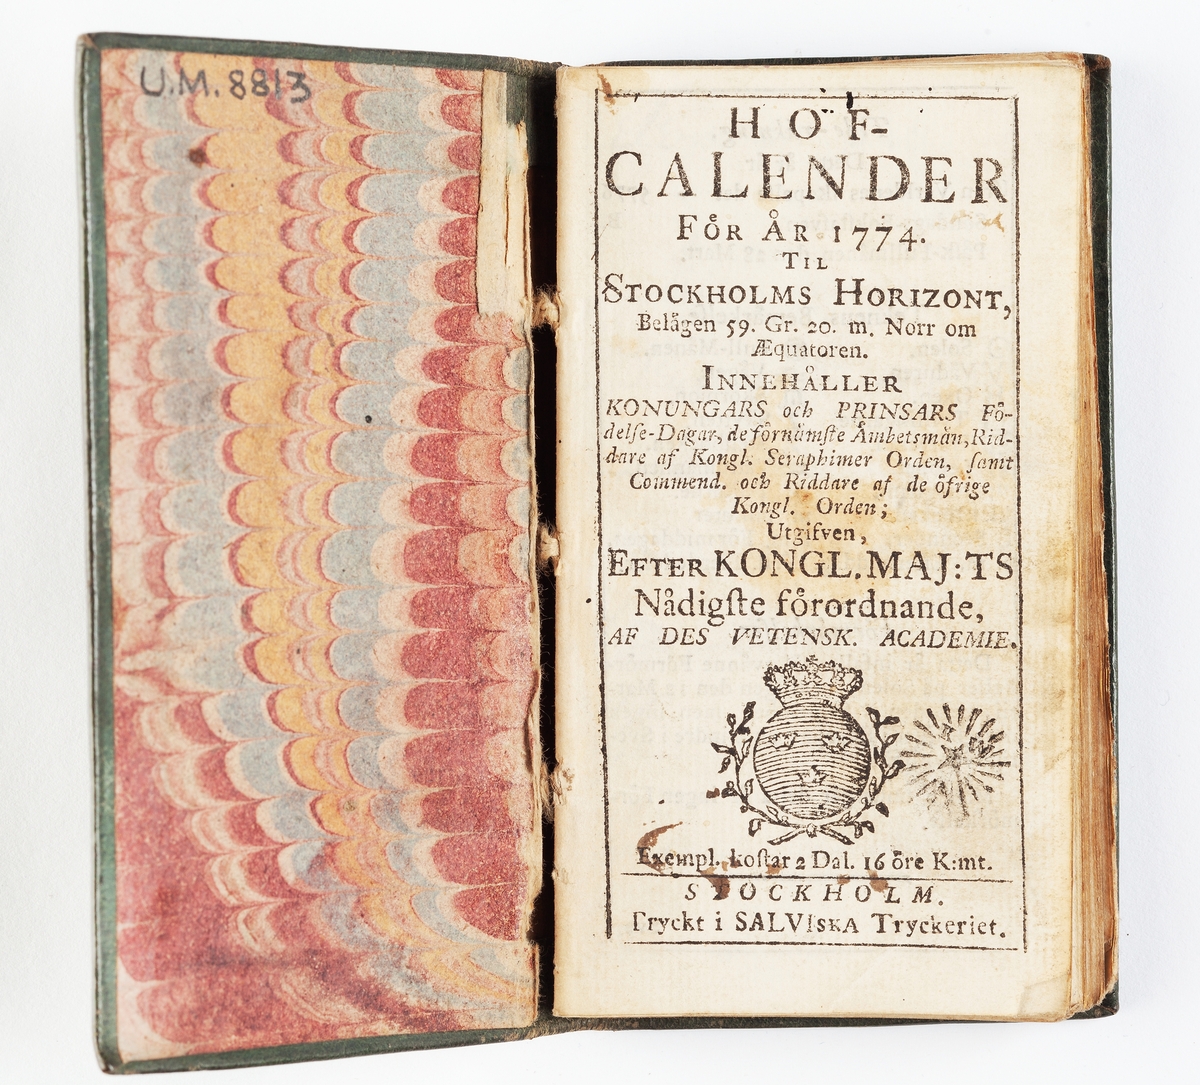 En almanack. Hofcalender för år 1774. Bunden i grått skinnband med guldtryck i form av inramade rankor. Tryckt i Salviska Tryckeriet, Stockholm.